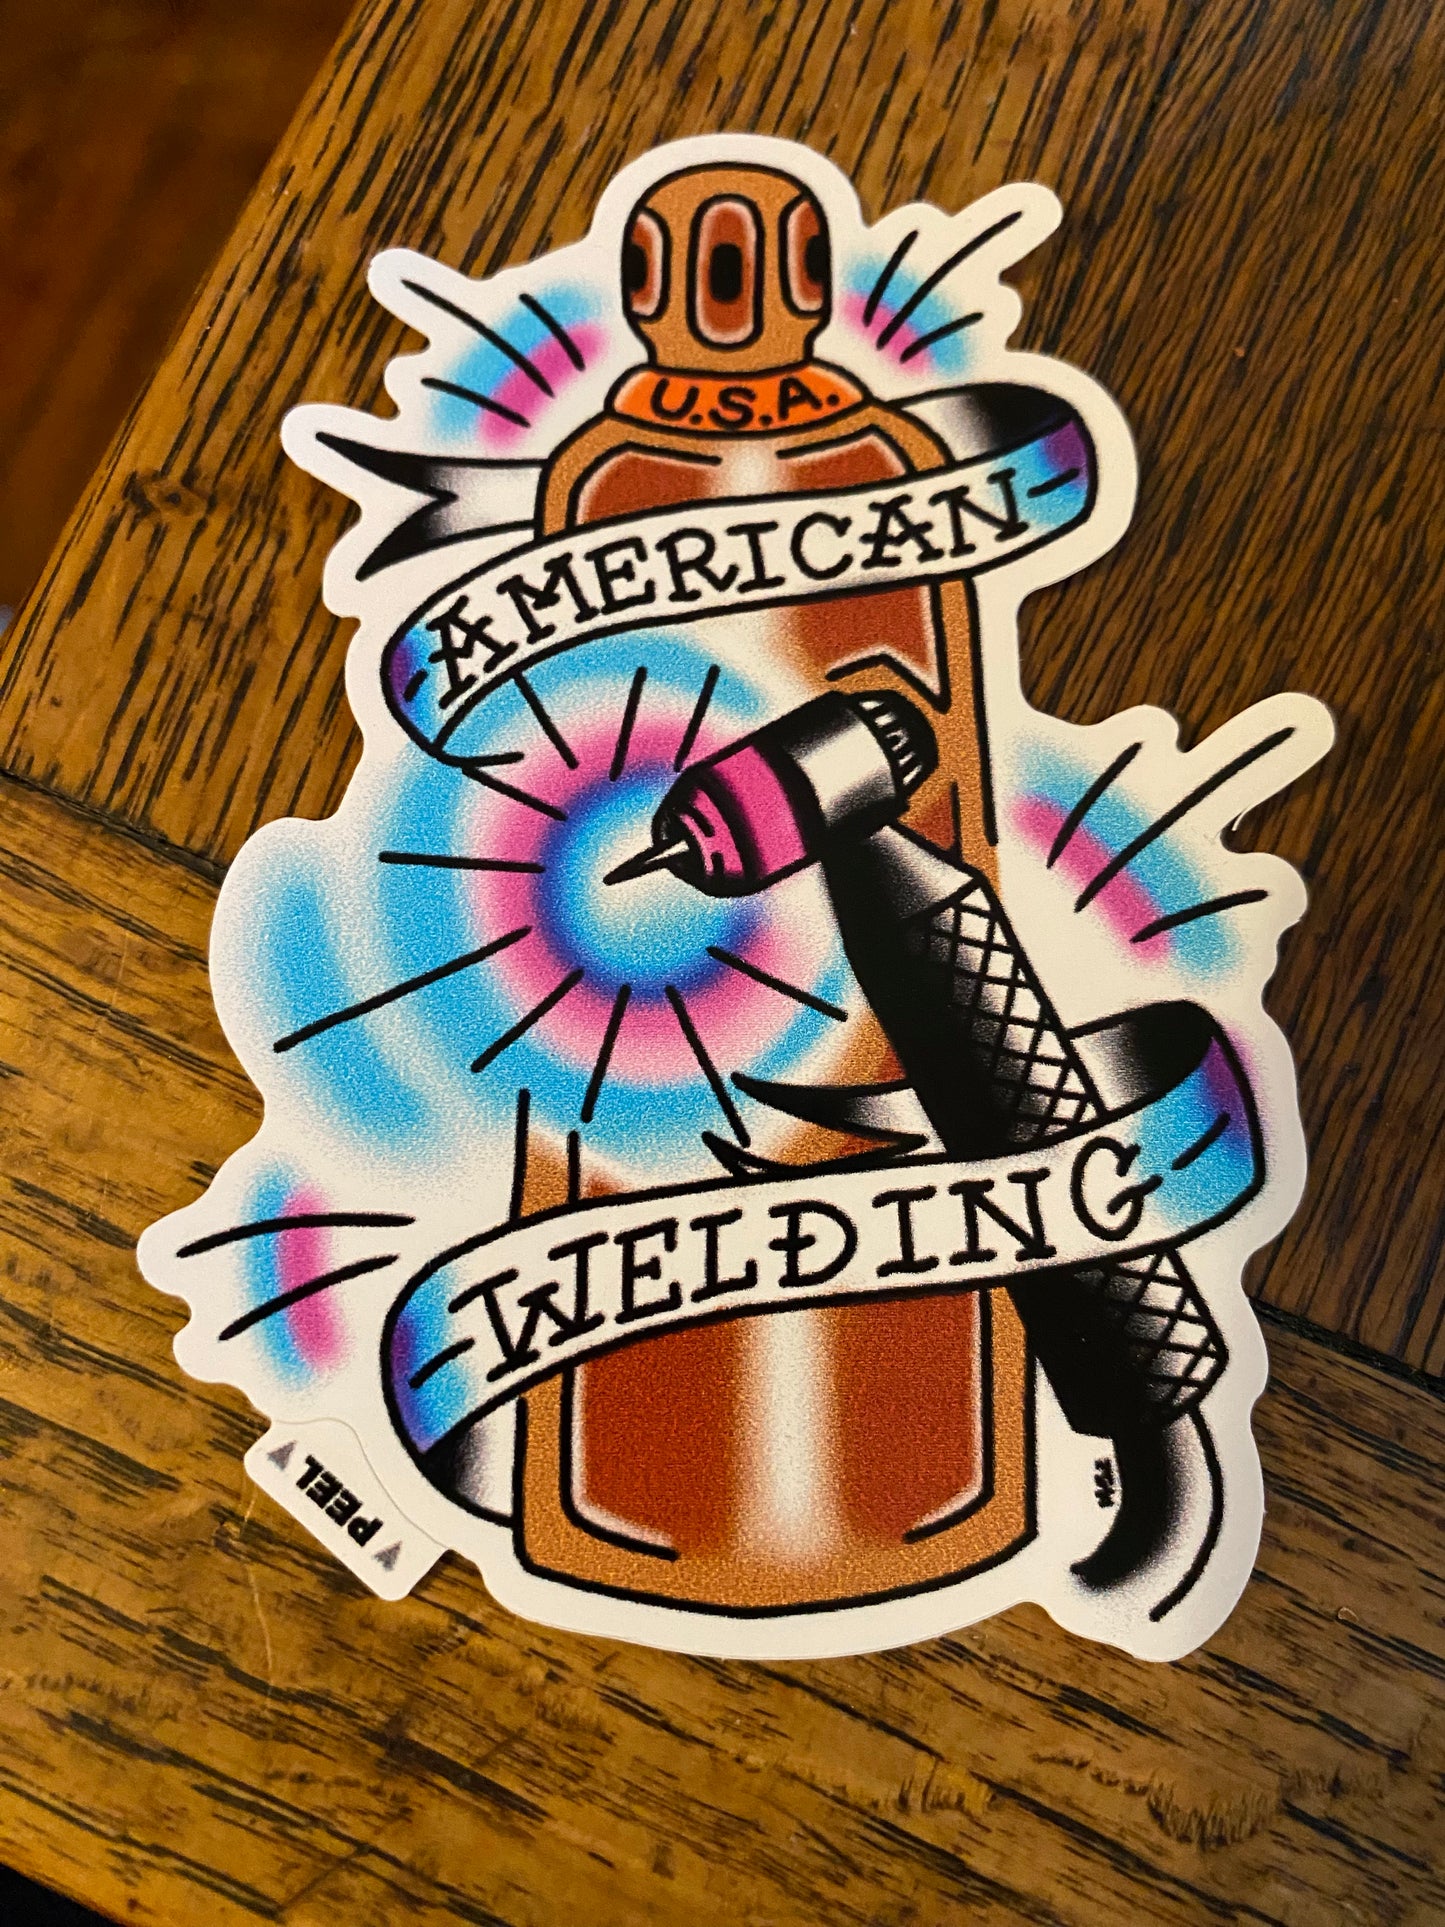 American Welding